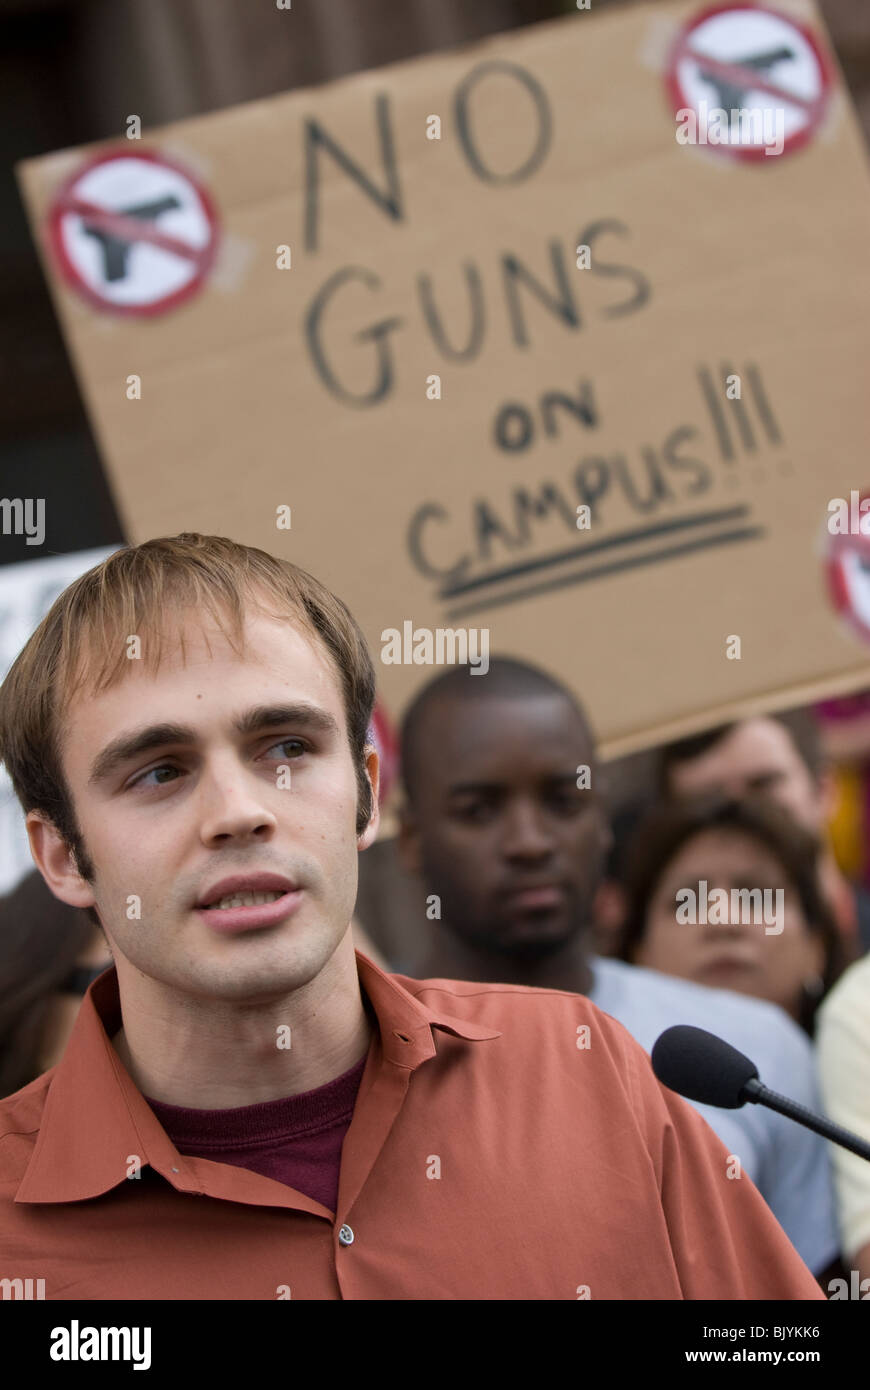 Studente di College parla di anti-gun rally in Texas Foto Stock